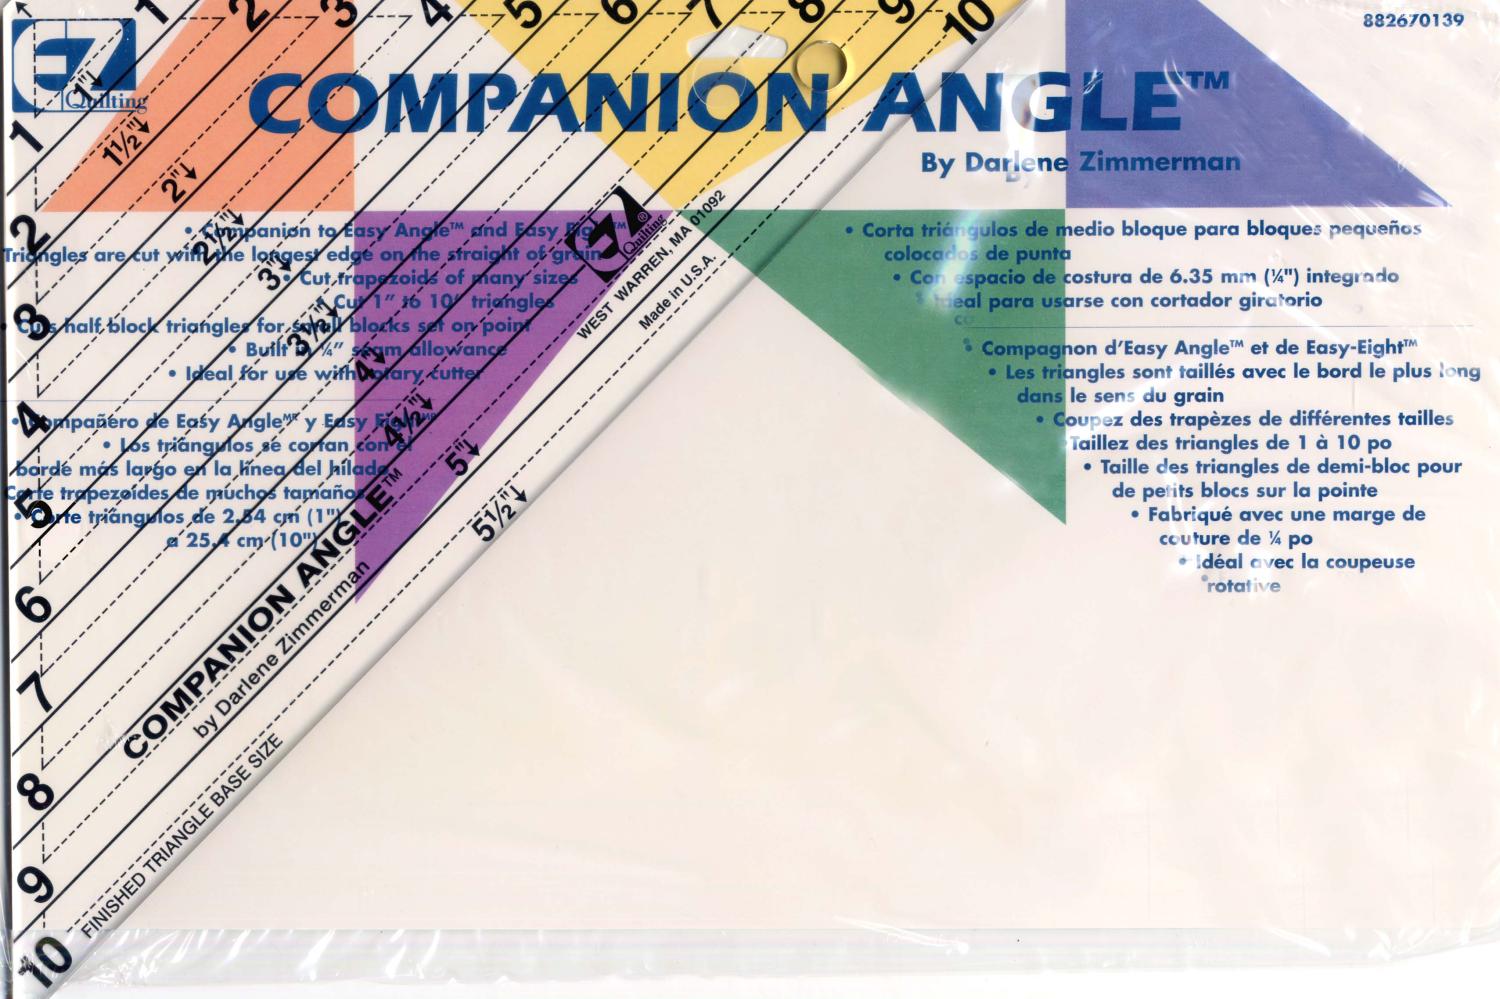 Companion Angle Triangle Ruler - 882670139